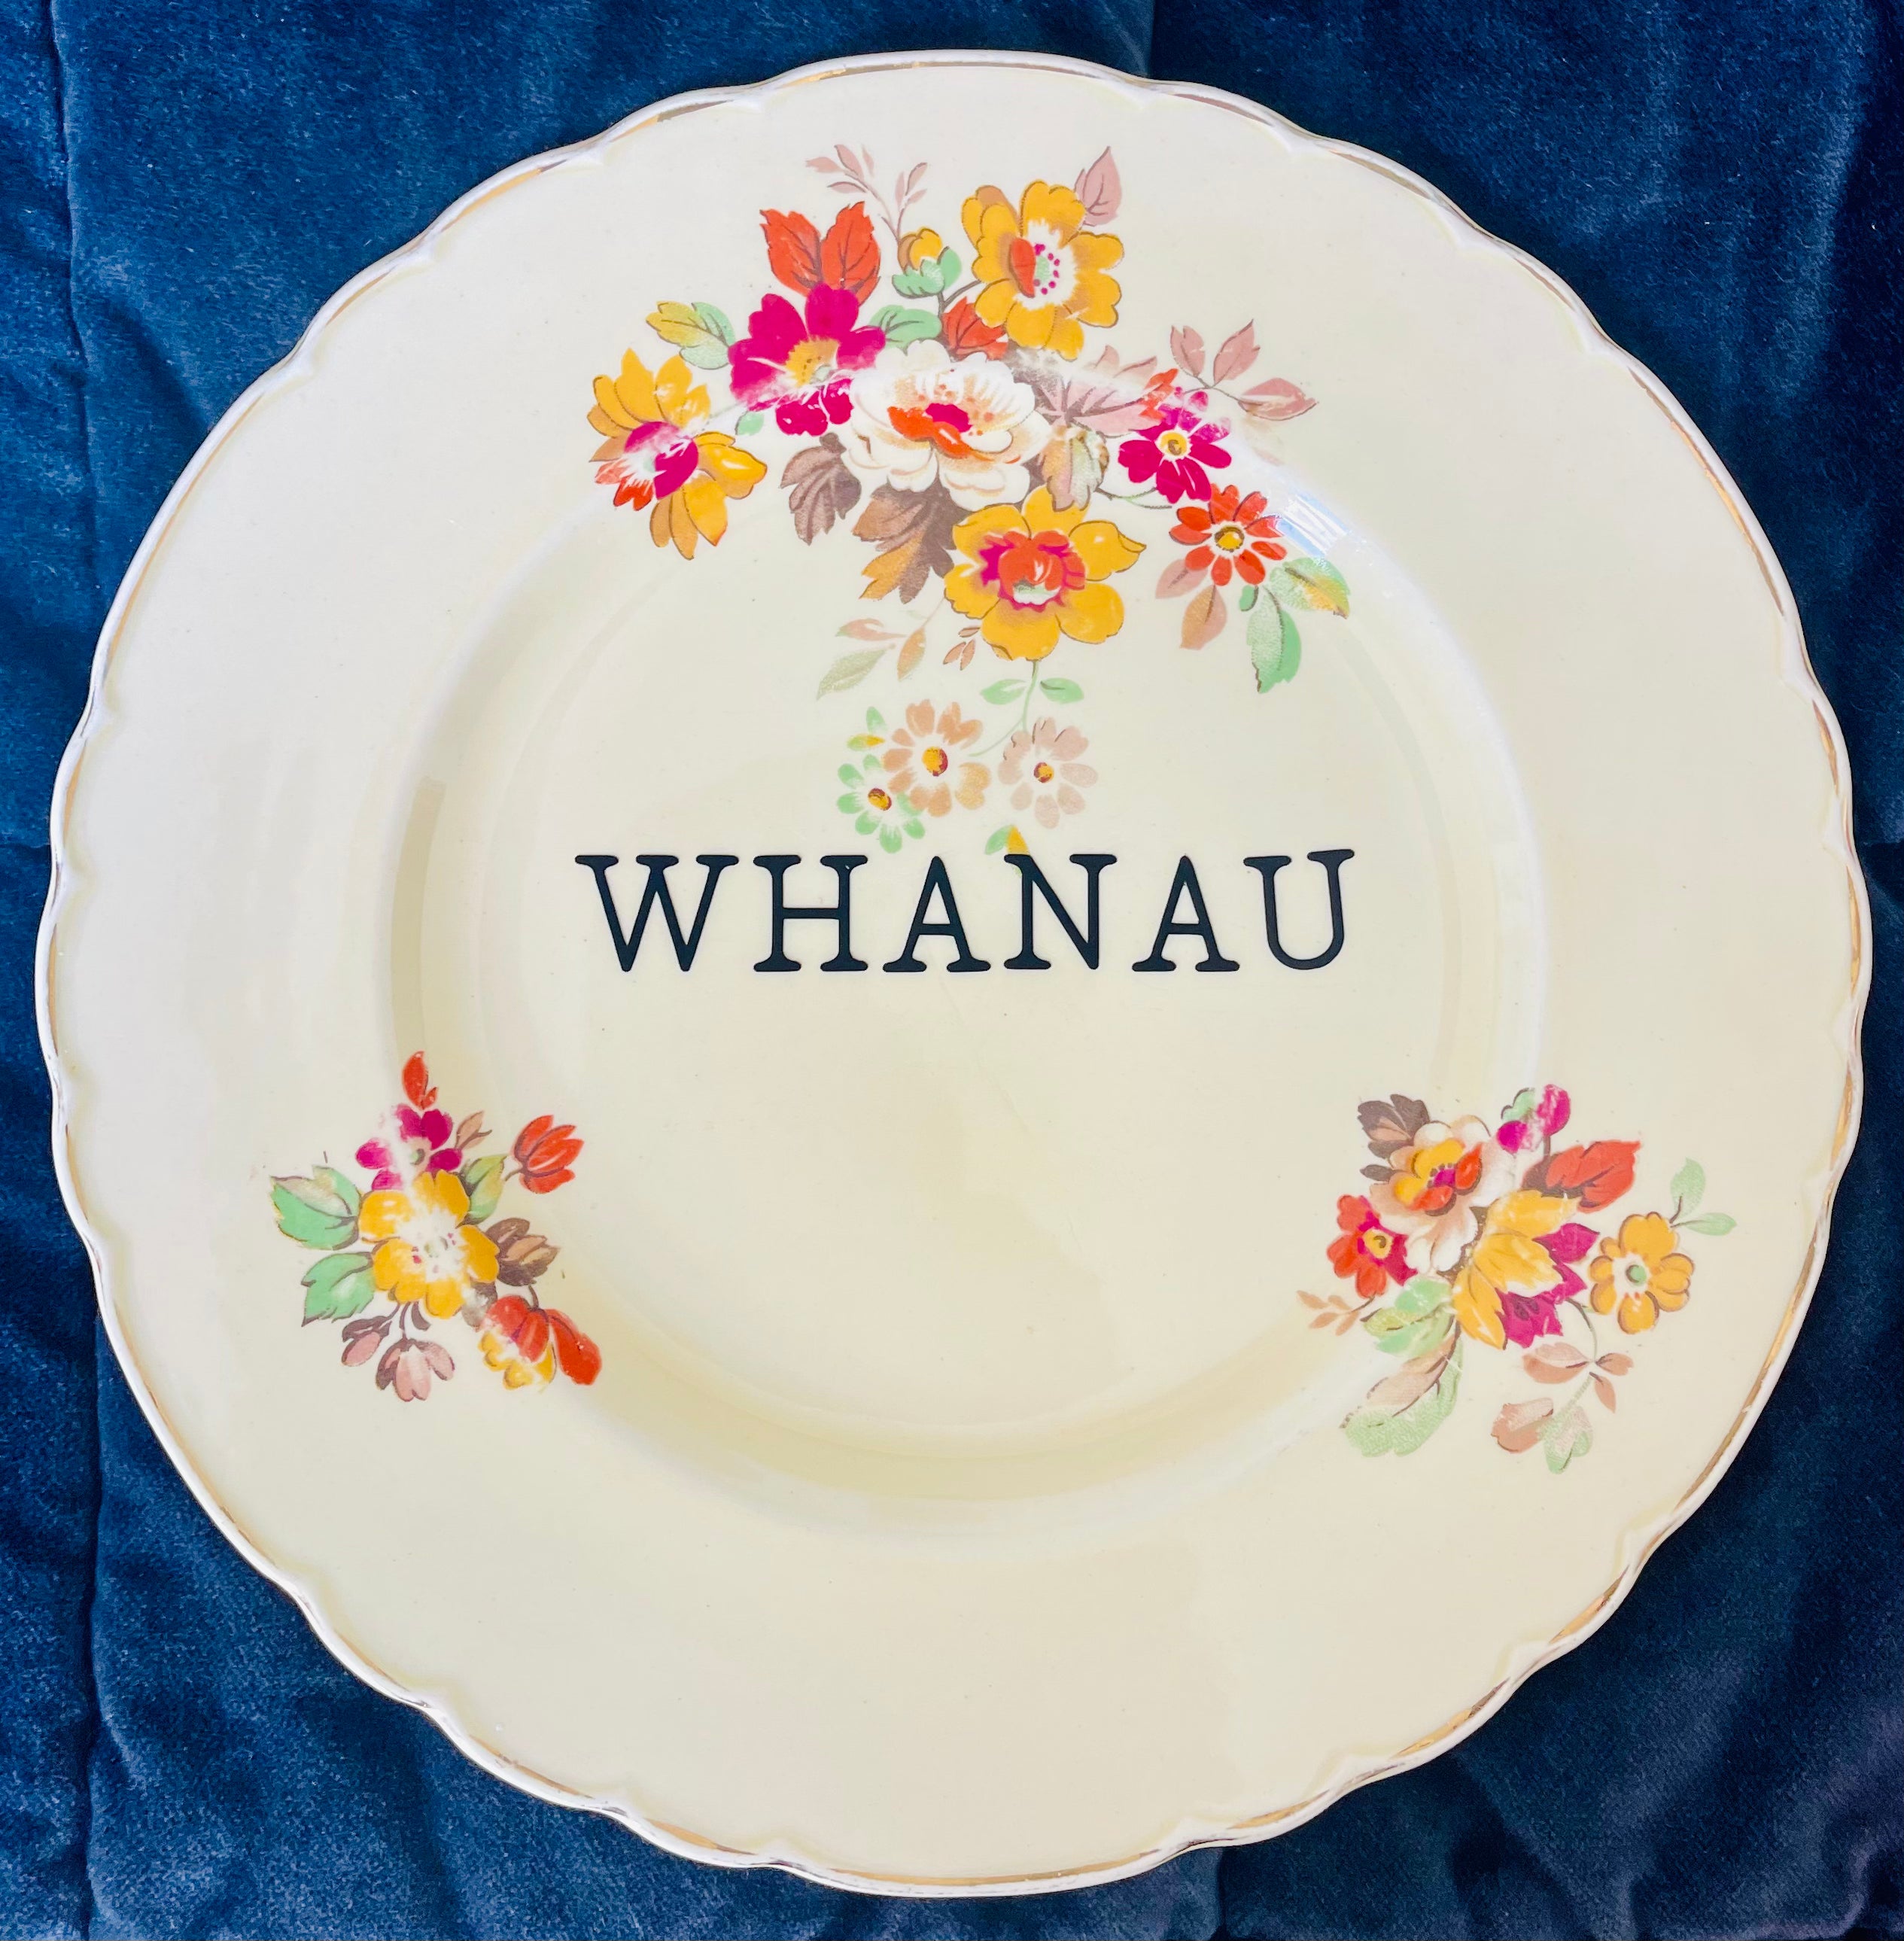 Sweary Plate - Whanau